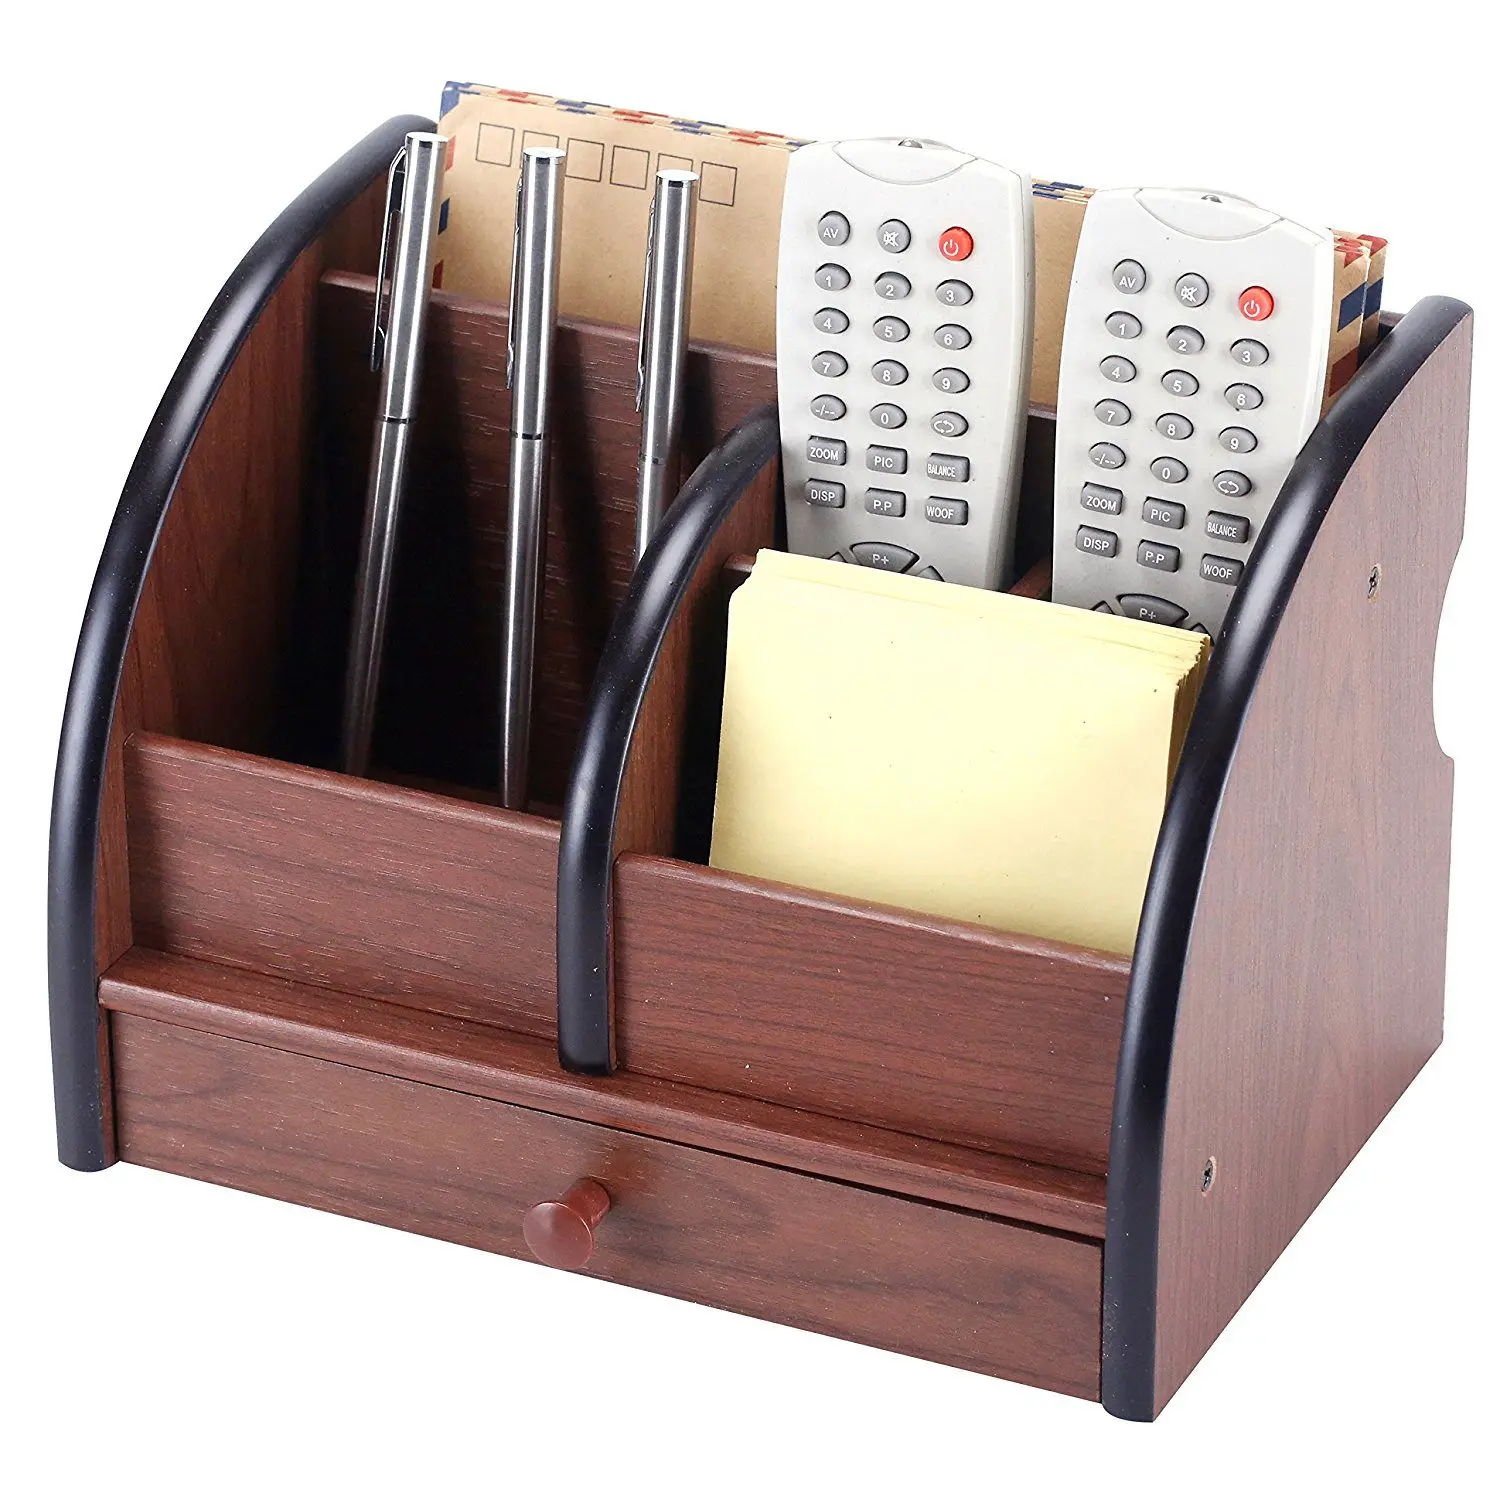 5-вагонные класса люкс с изображением коричневого деревянного офисный канцелярский Настольный Органайзер-буквы, данные в хаотичном/алфавитном порядке для сортировки по цвету с выдвижным ящиком держатель для ручки